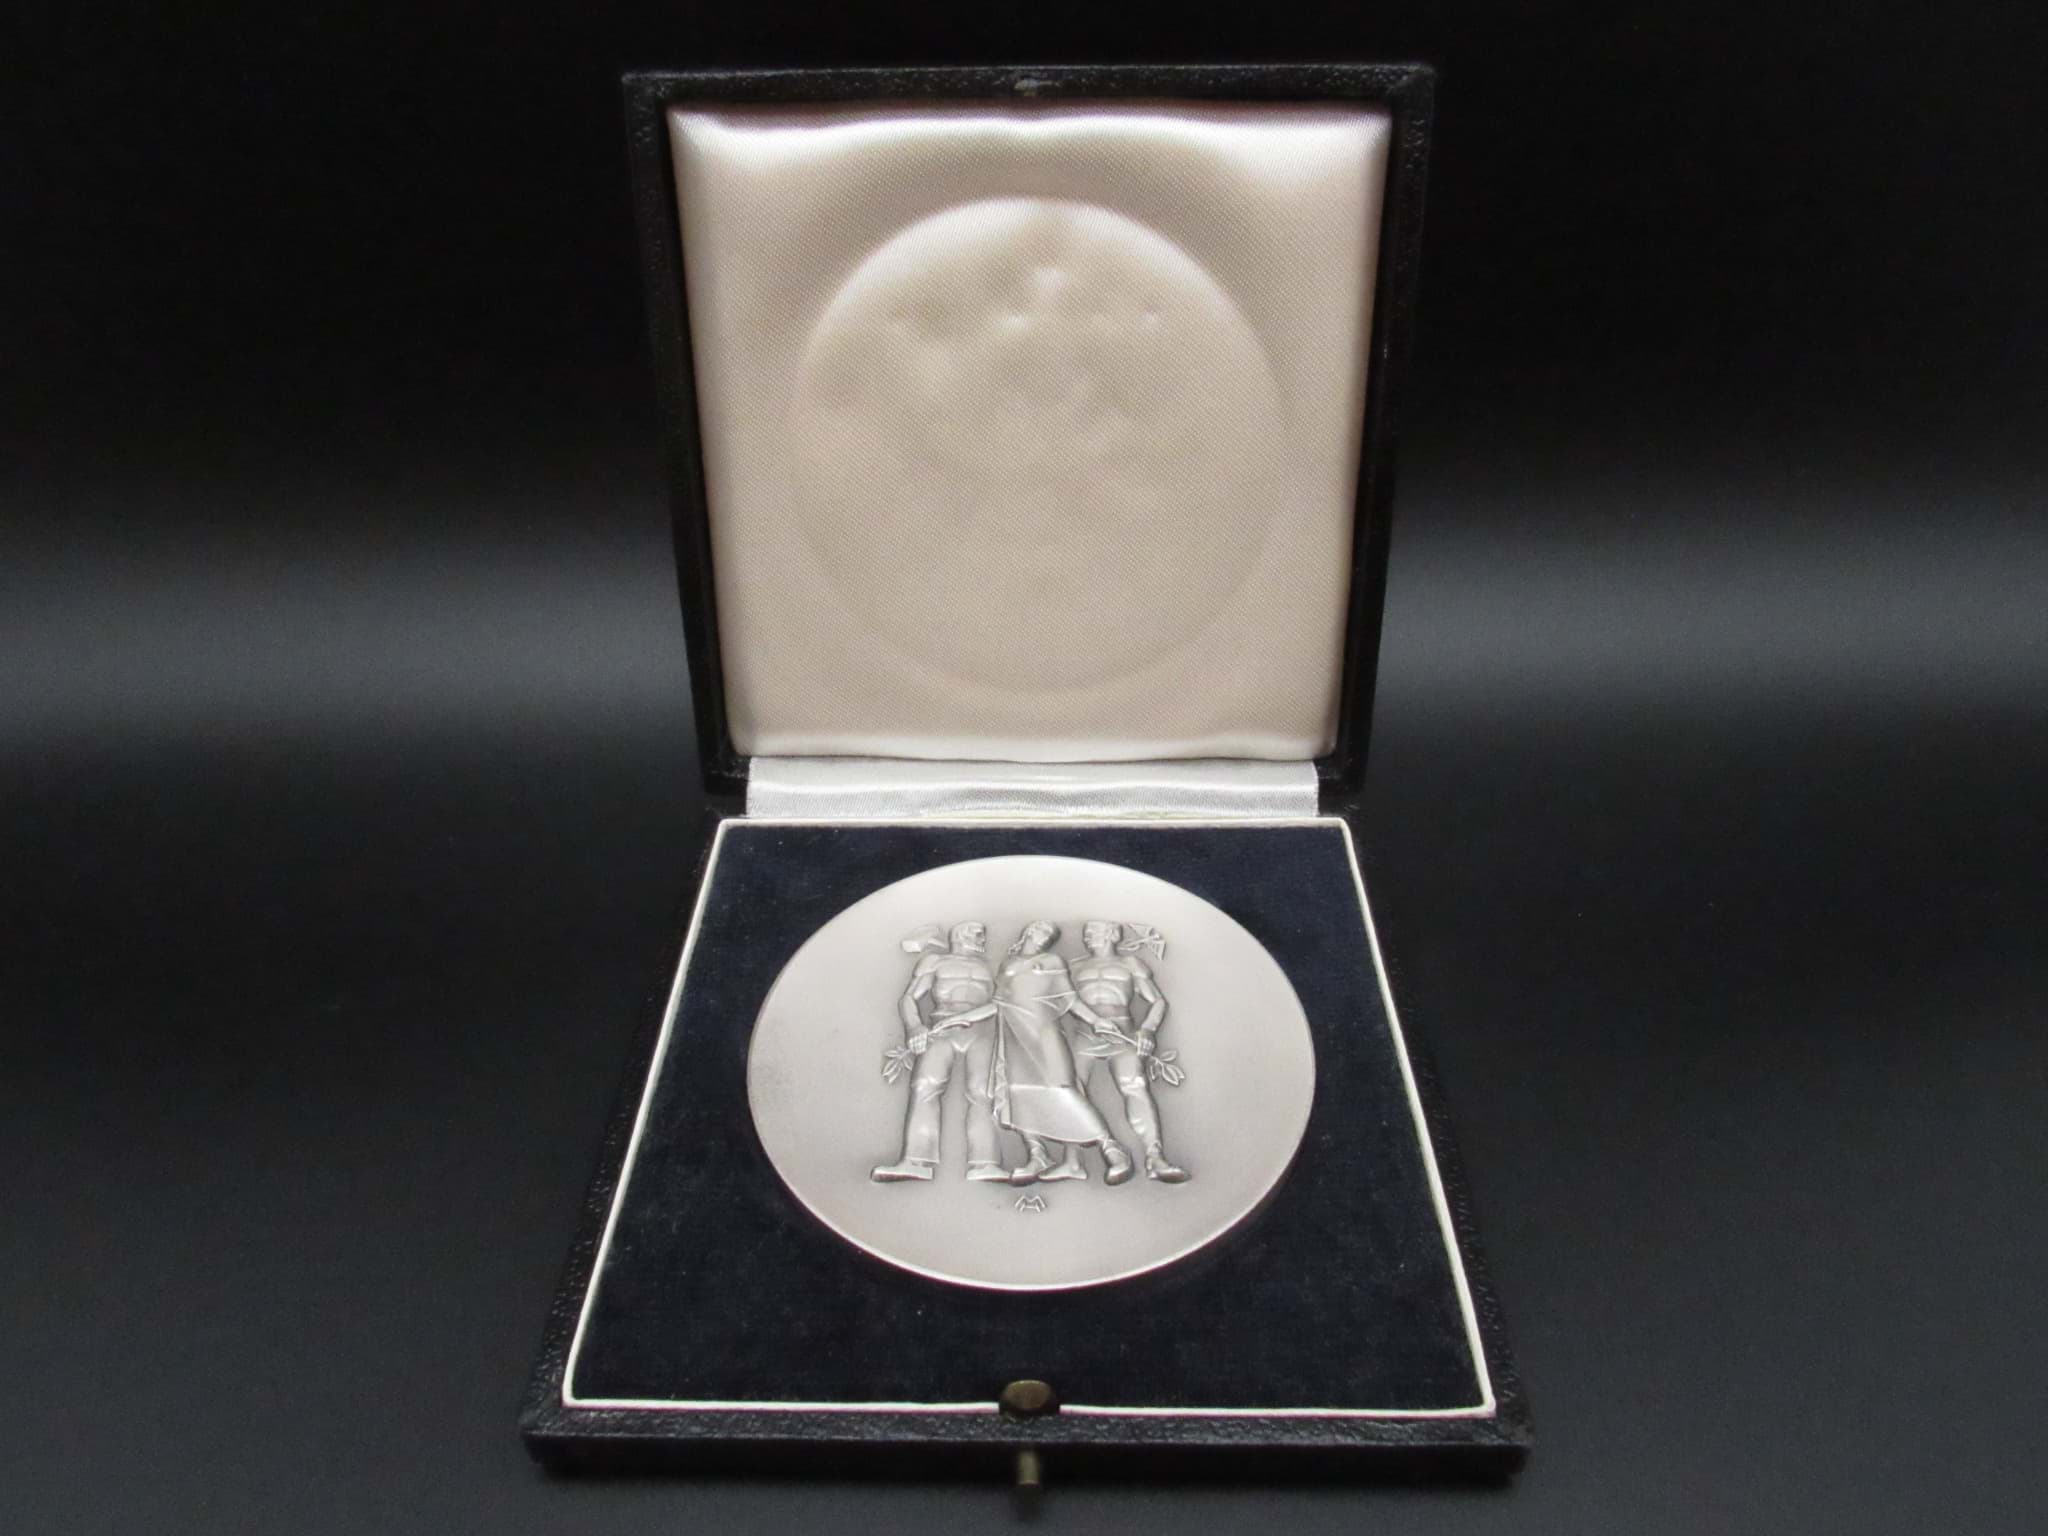 Afbeelding van Wirtschafts-Medaille mit Etui-Schachtel, für langjährige Mitarbeit, Silberauszeichnung